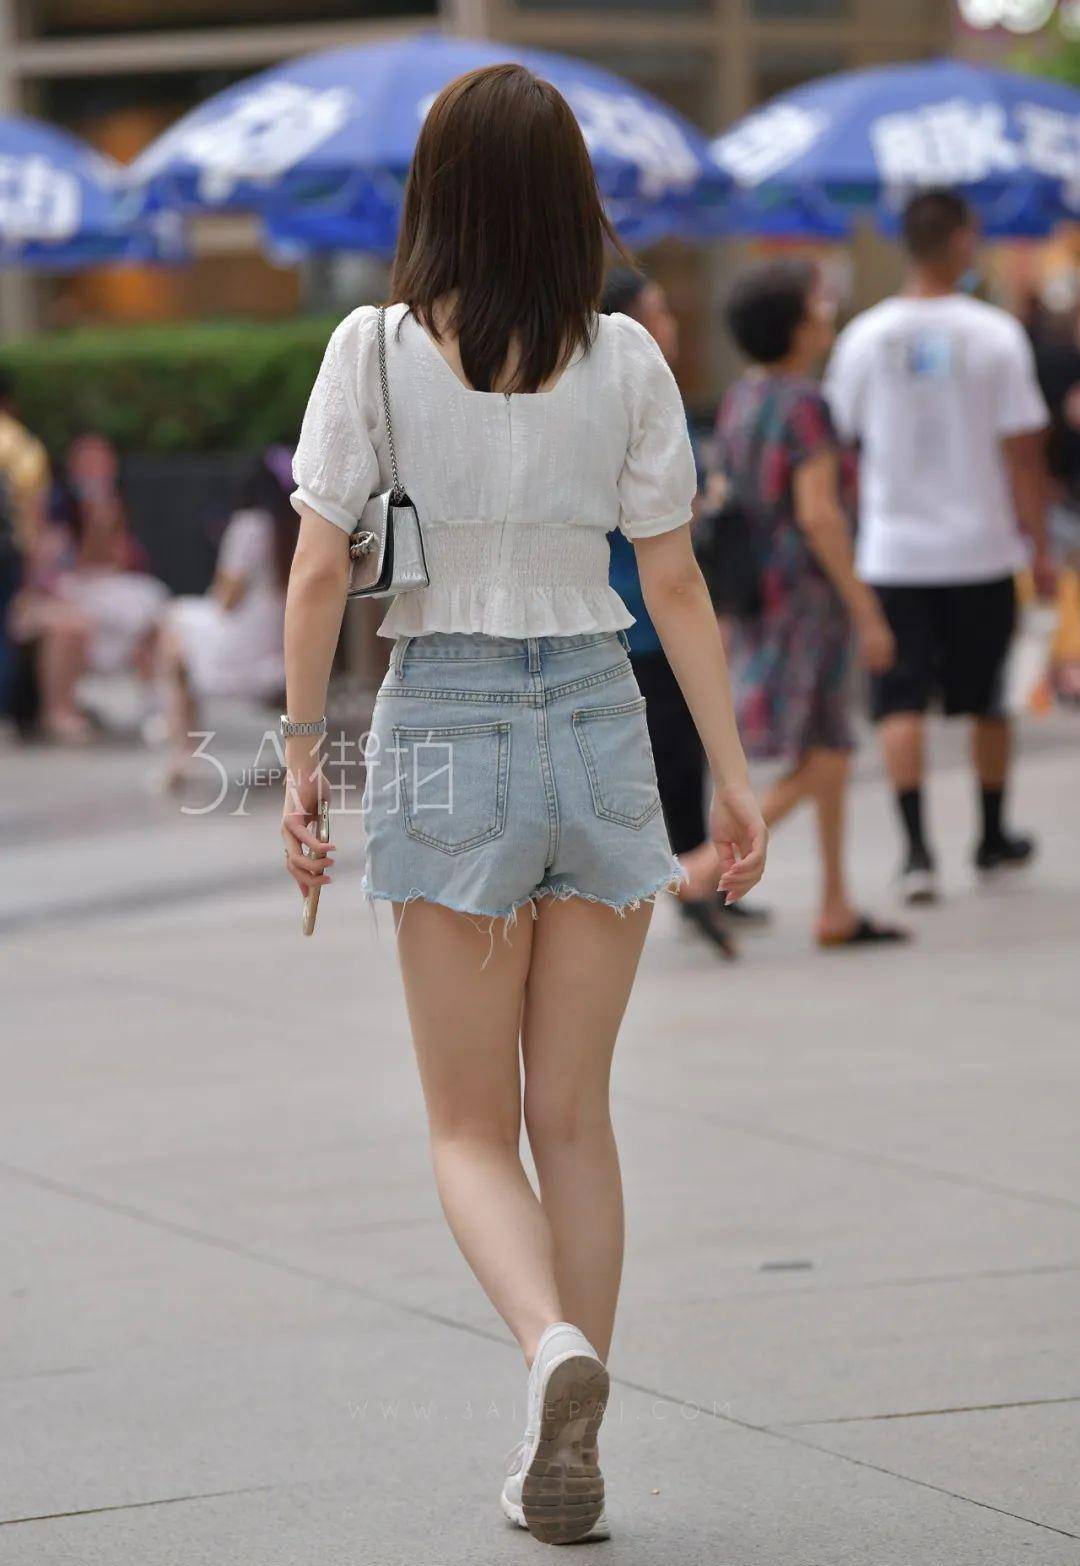 Người đẹp Trung Quốc diện quần ôm xuống phố, không nhìn thấy mặt cũng nổi bật - ảnh 4